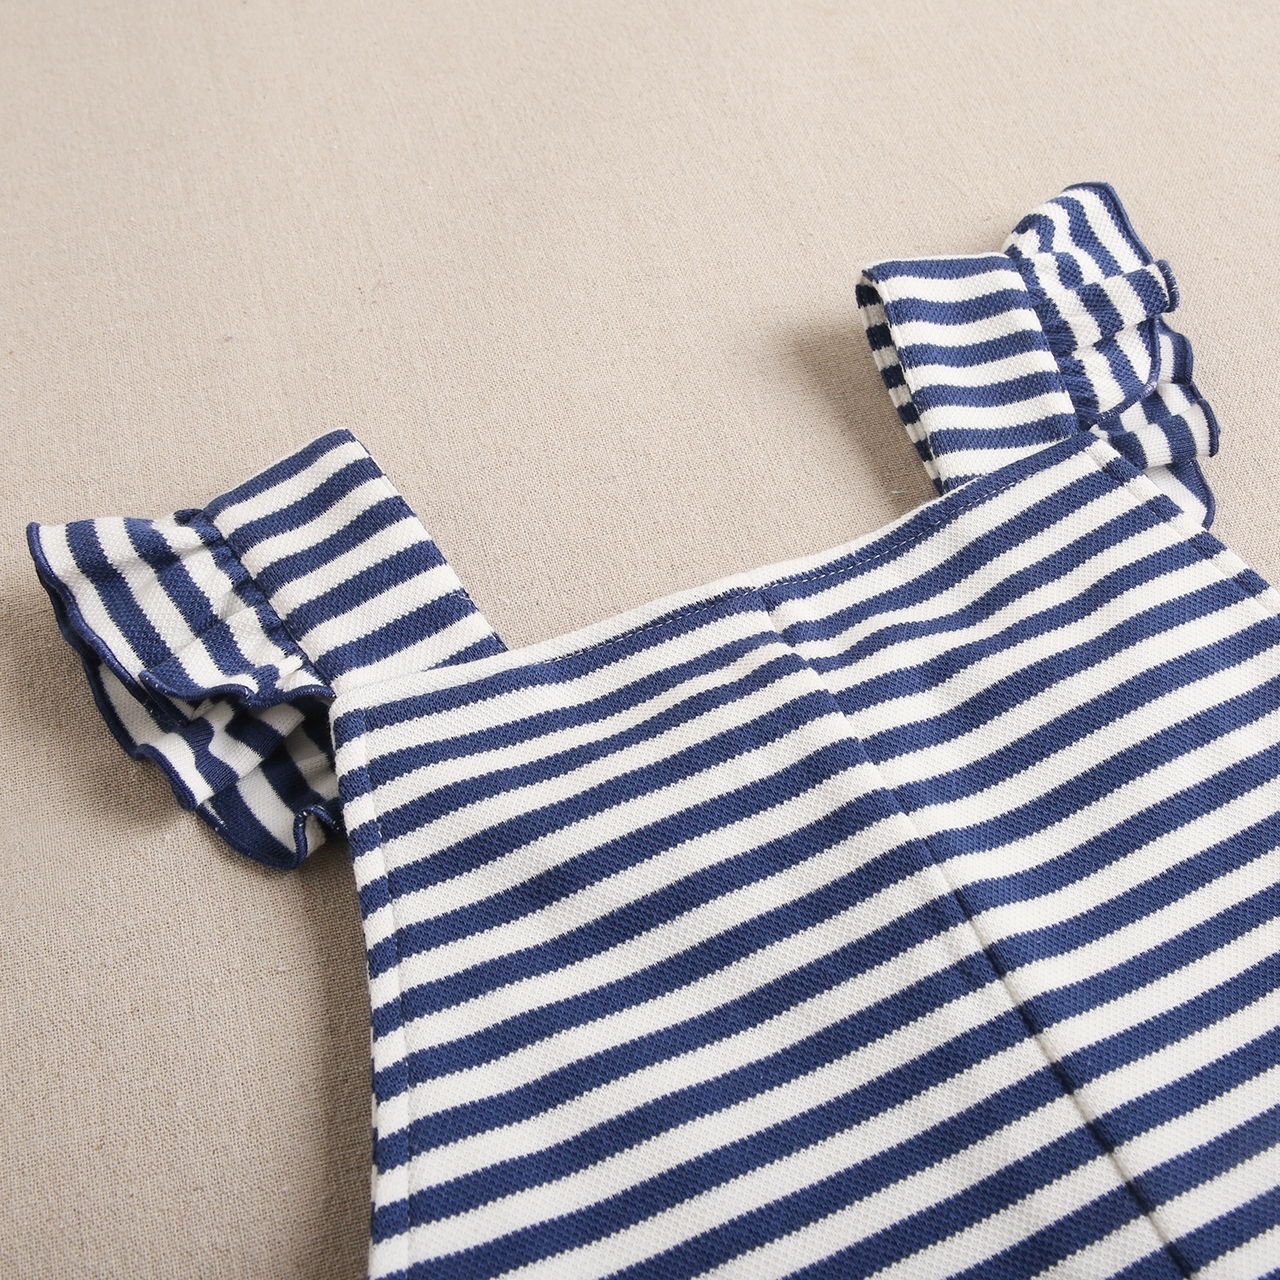 Imagen de Mono teen marinero corto en rayas blancas y azul marino